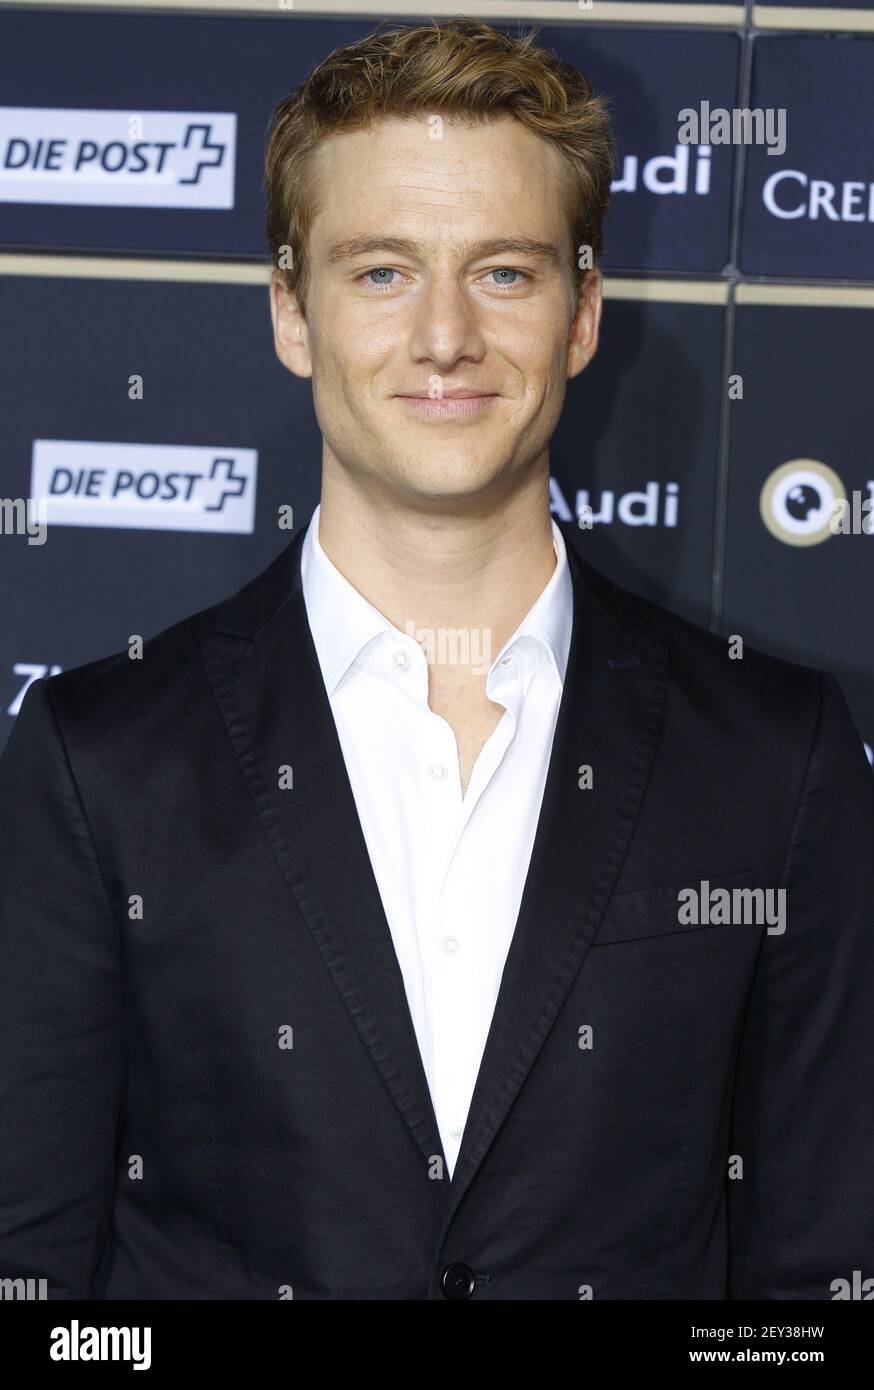 Zurich, Switzerland - September 27, 2014: german Actor Alexander ...